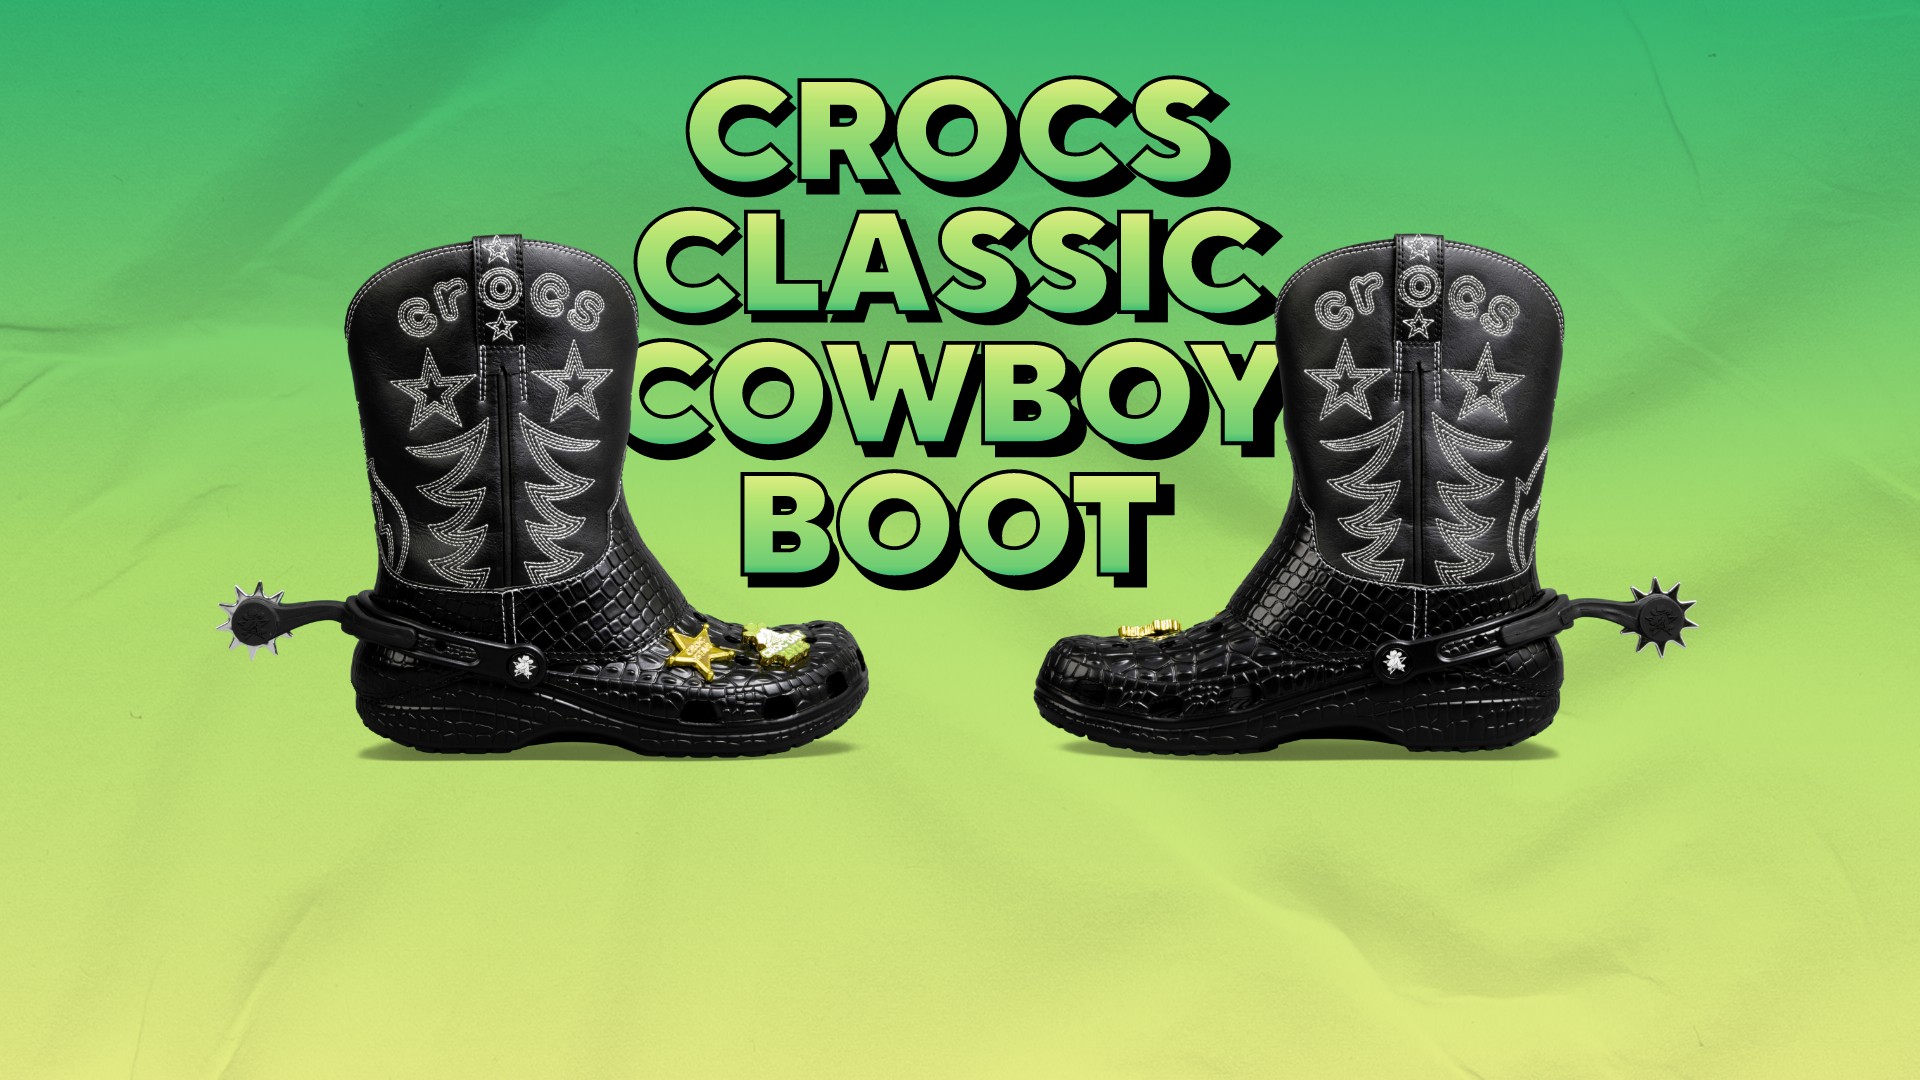 Crocs with spurs? Shoe company unveils new cowboy boots – NBC Los Angeles